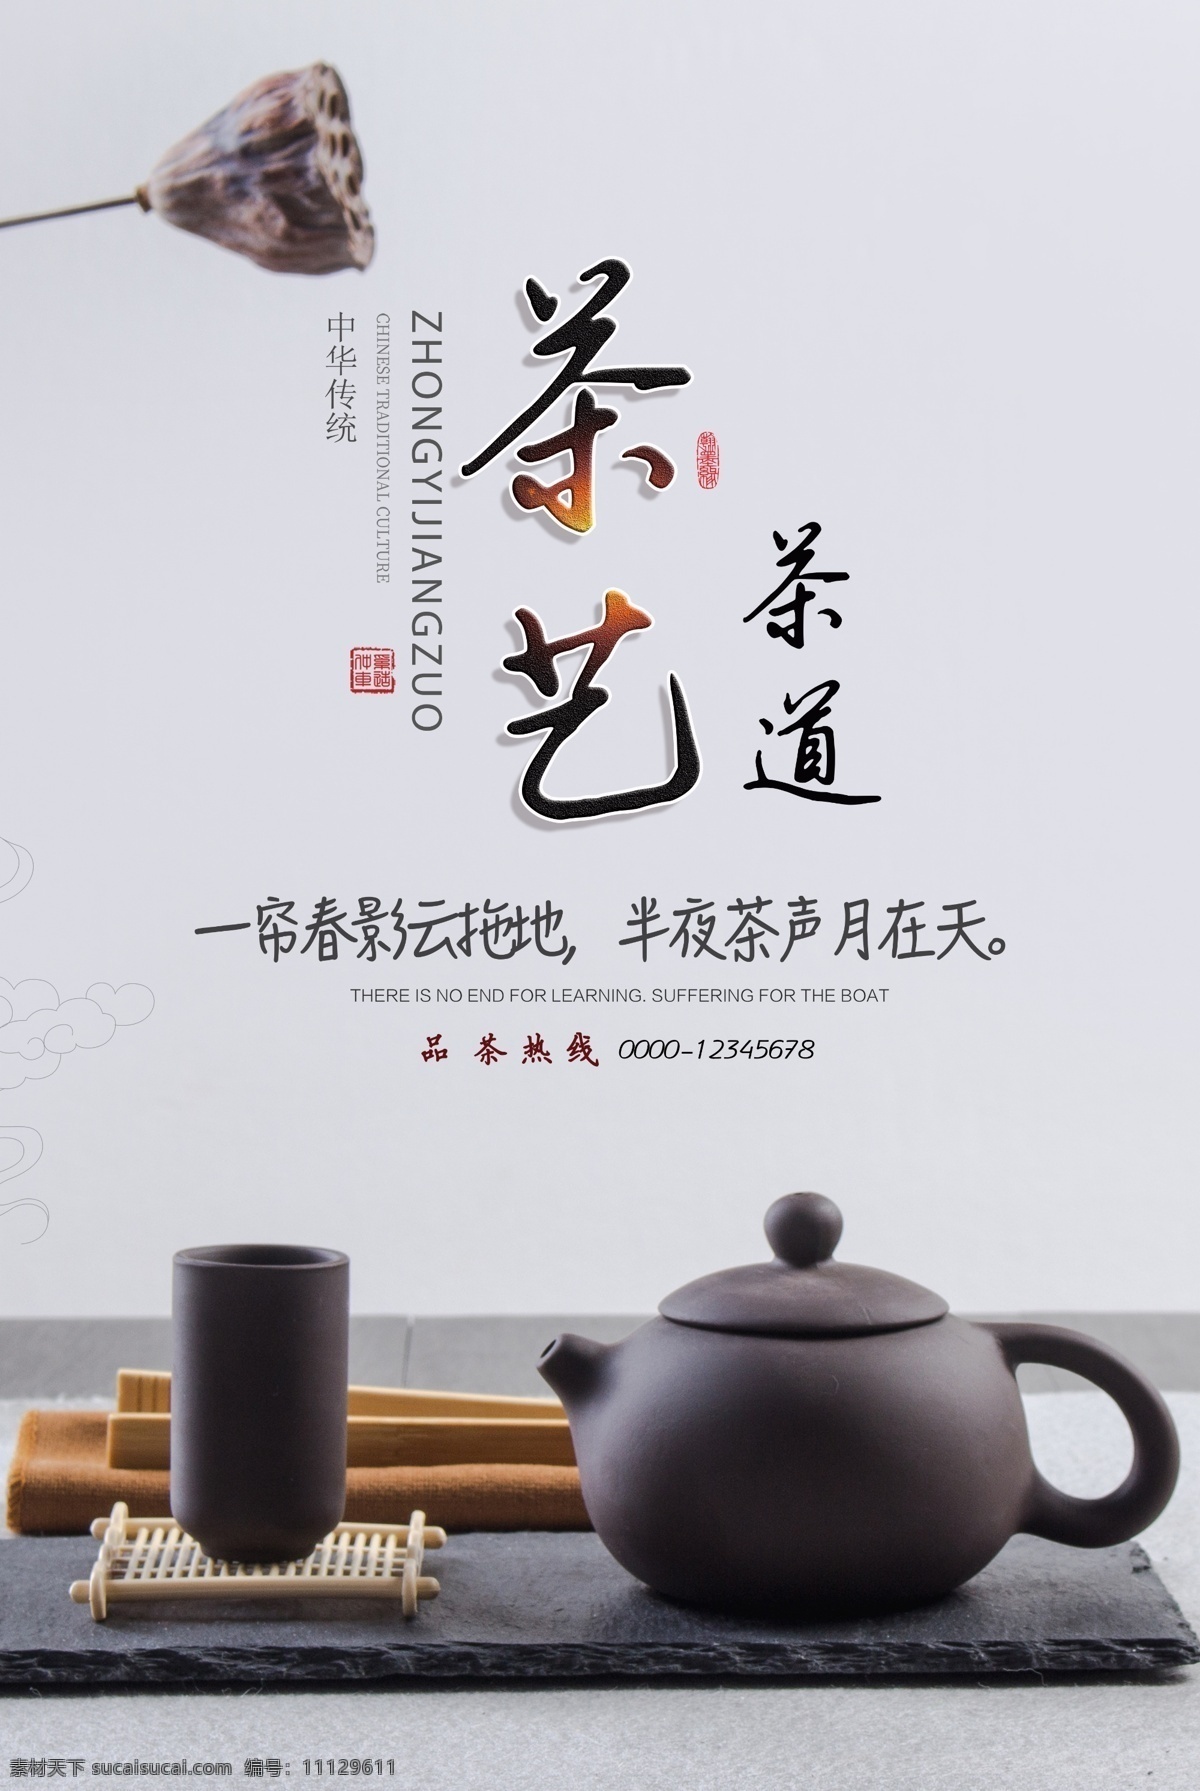 茶艺茶道 海报 茶艺 茶道海报 茶文化 中国茶文化 养生 茶具